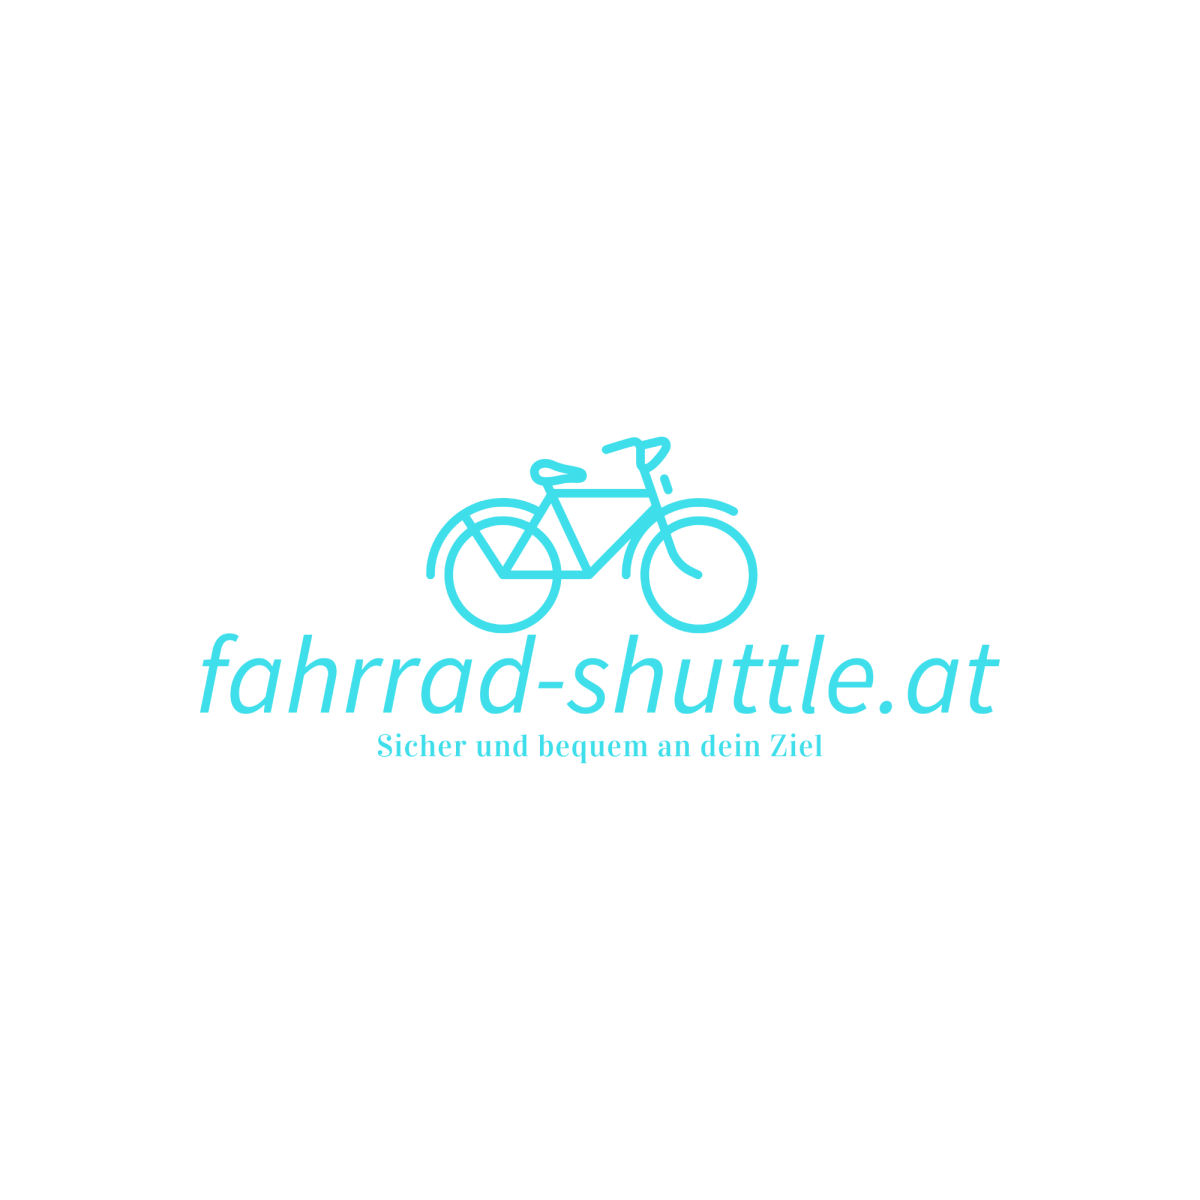 (c) Fahrrad-shuttle.at